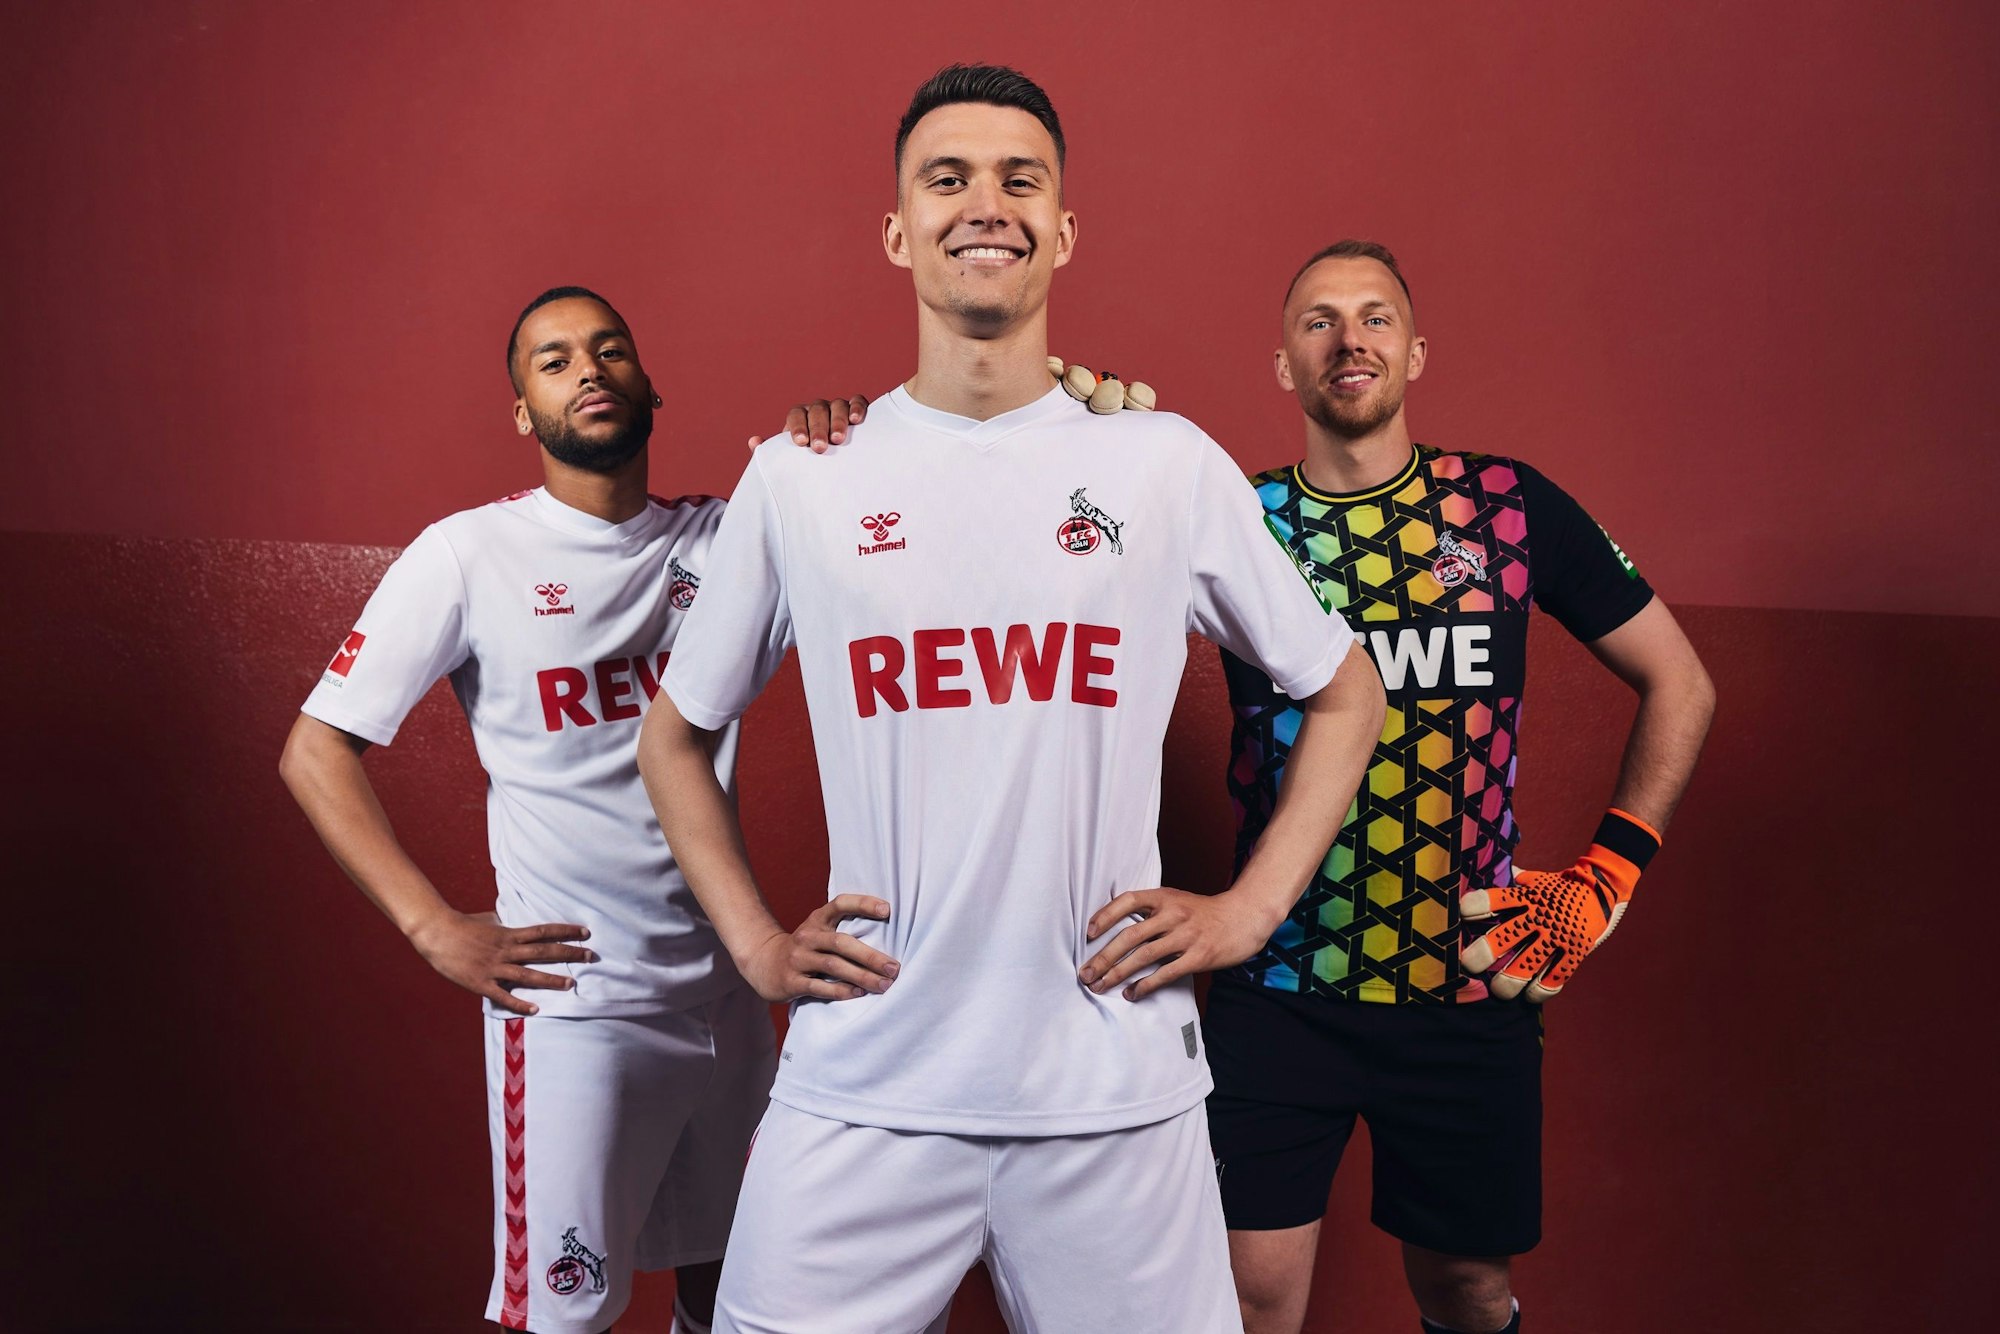 Die FC-Profis Linton Maina und Dejan Ljubicic präsentieren das neue Heim-Trikot für die Saison 2023/2024. Marvin Schwäbe posiert in seinem neuen Torwart-Dress.